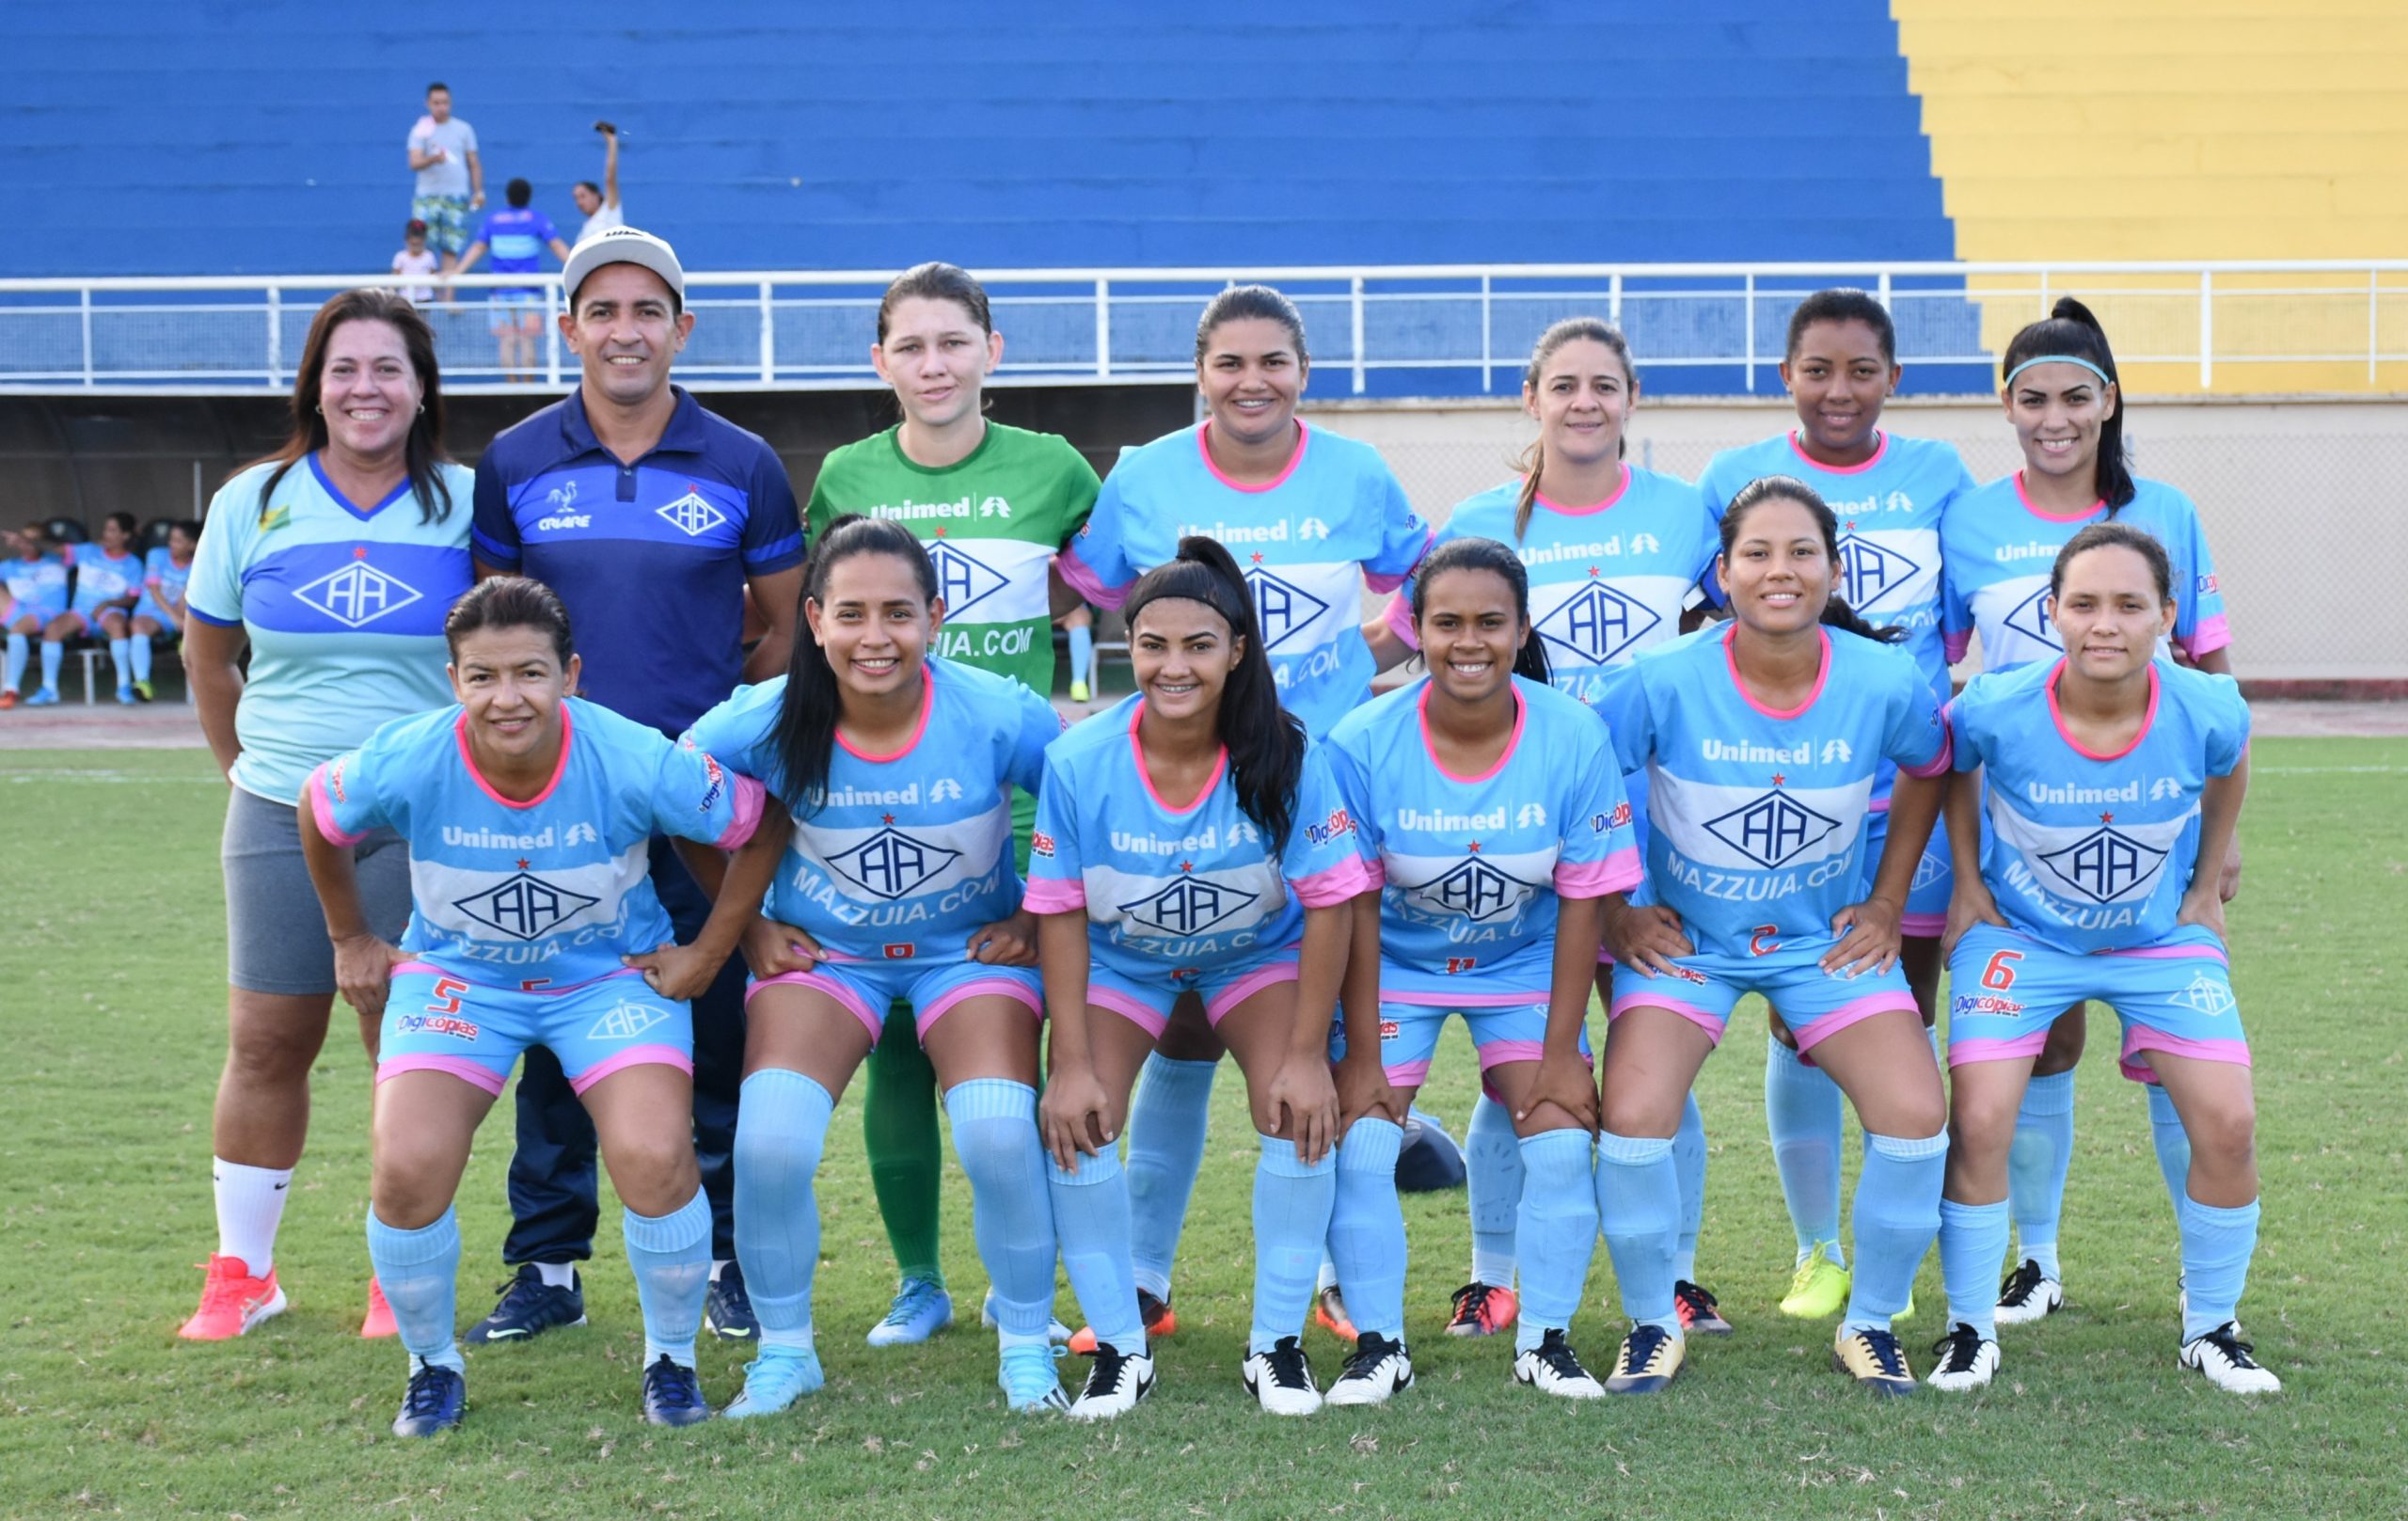 Ranking da CBF aponta Atlético-AC feminino como melhor time do estado e 3º  da região Norte, futebol